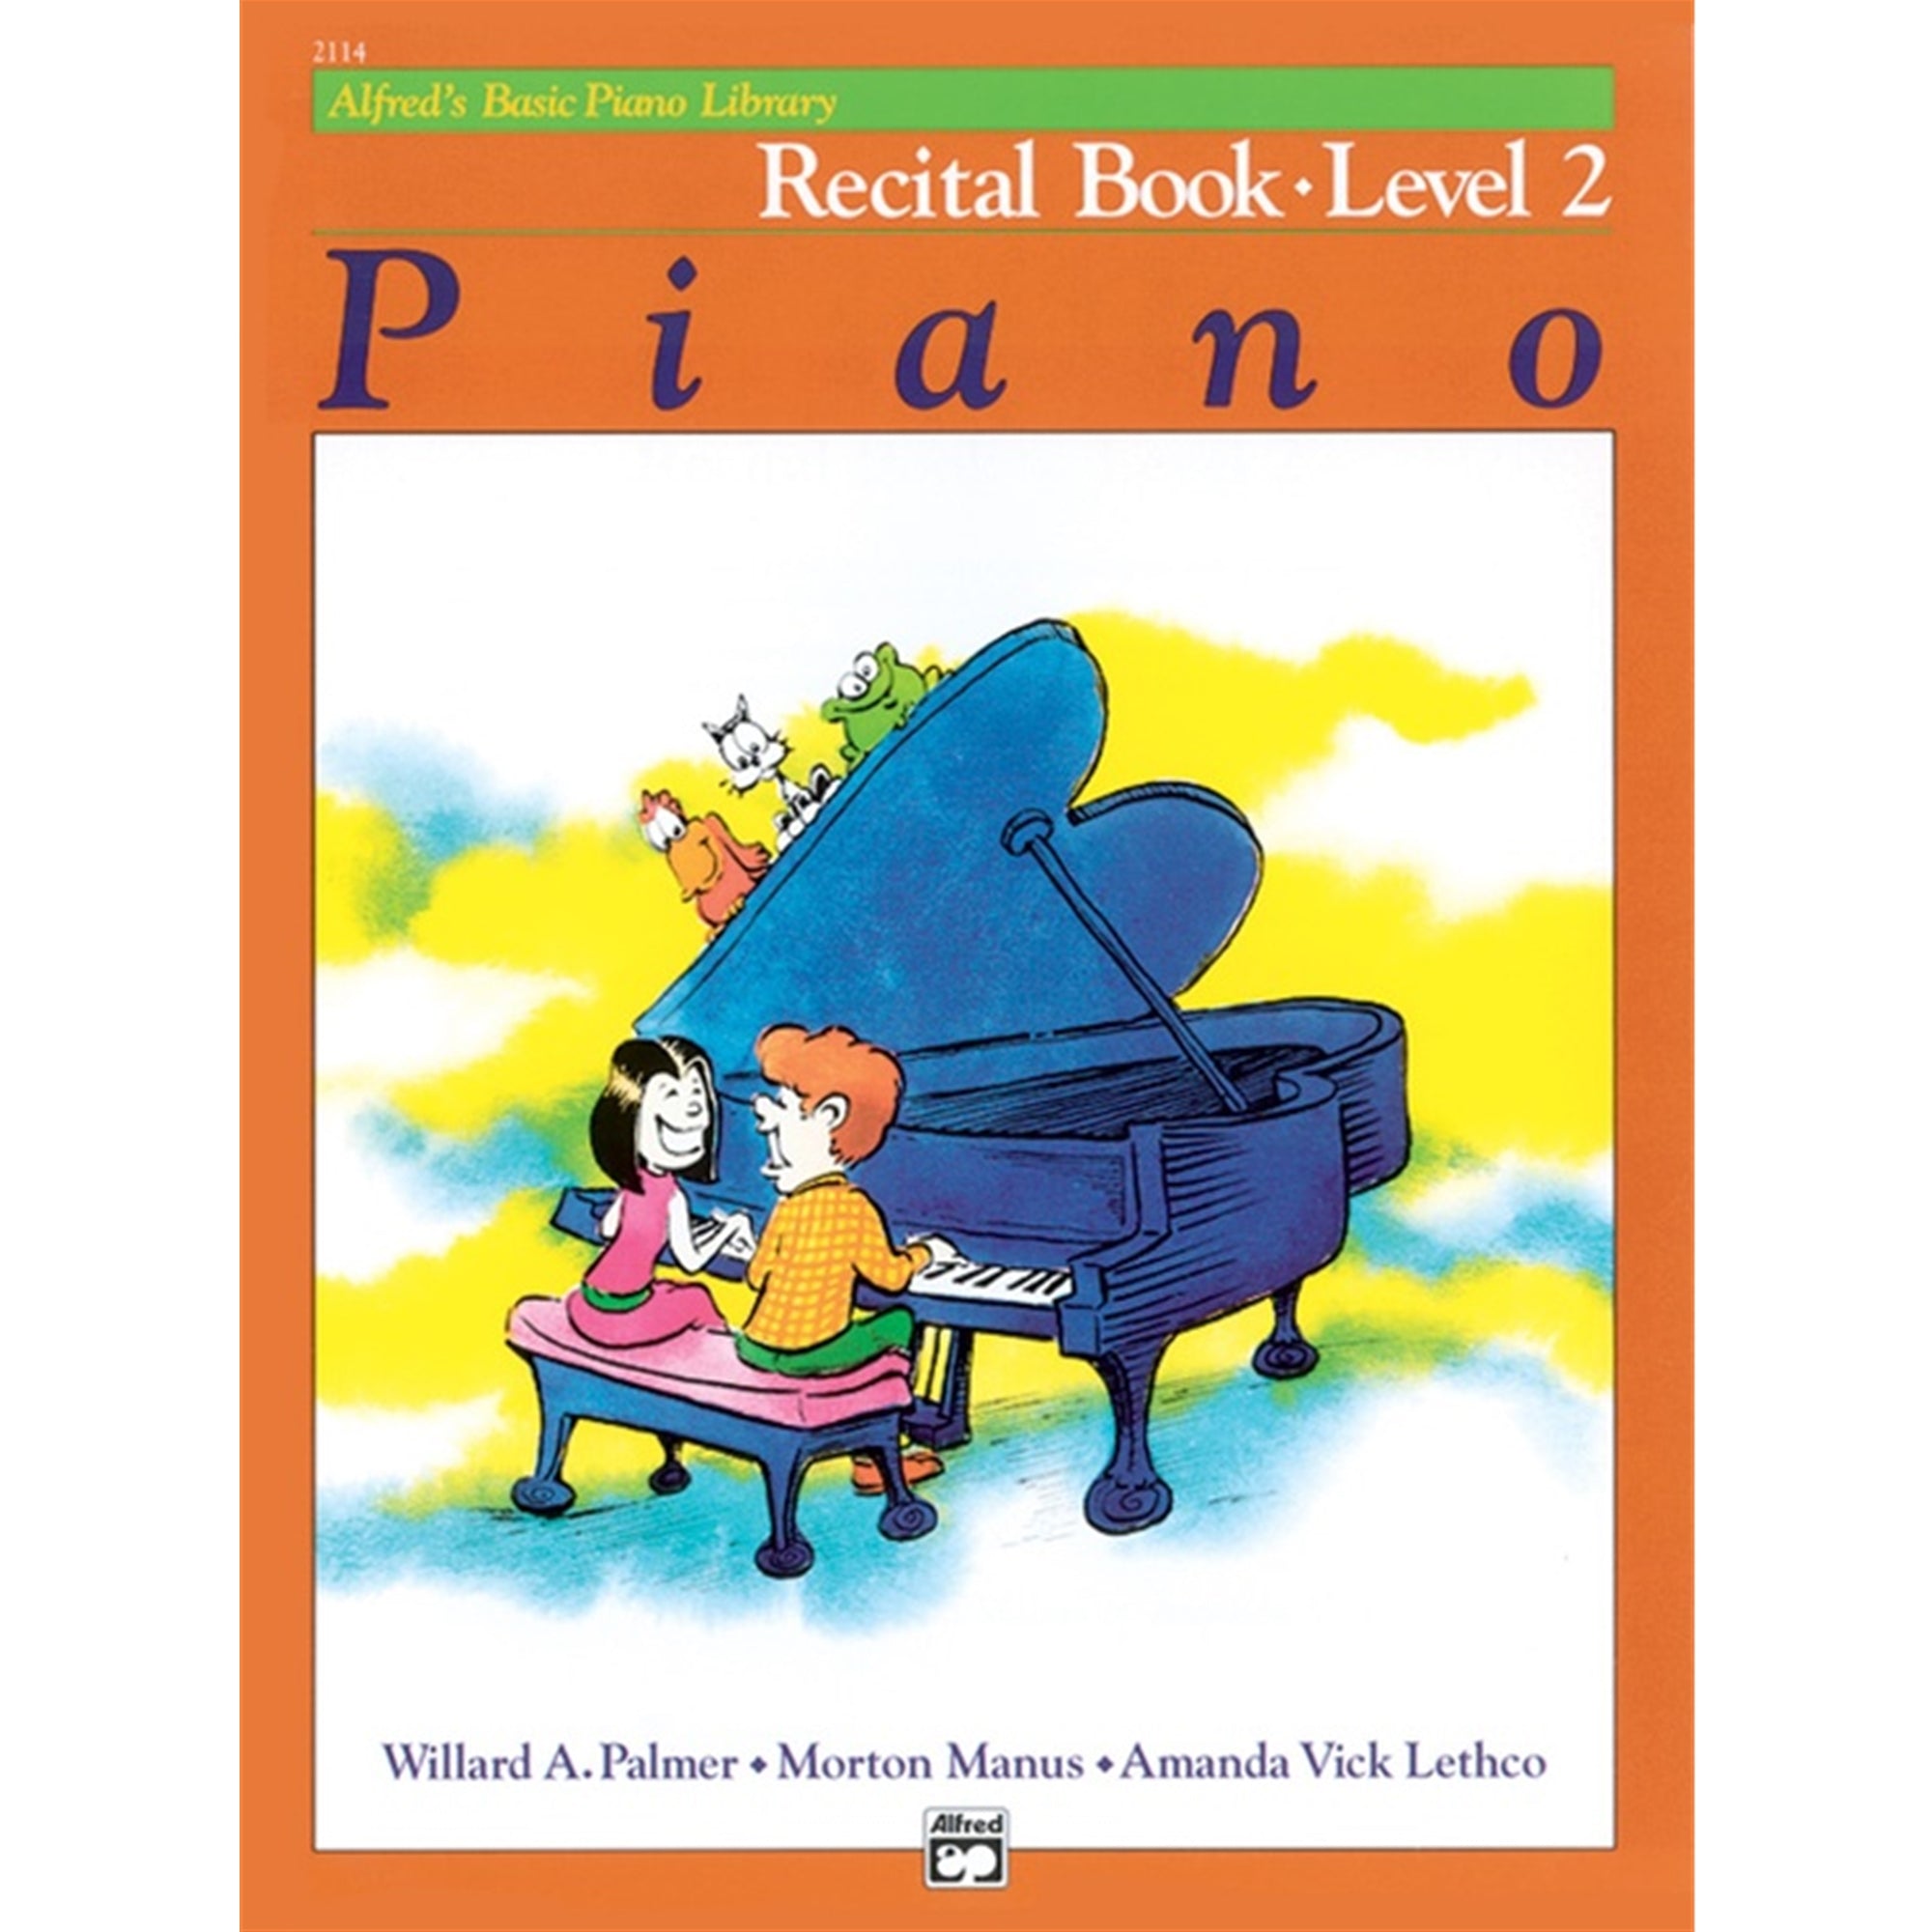 ALFRED 2114 Alfred's Basic Piano Course: Recital Book 2 [Piano]